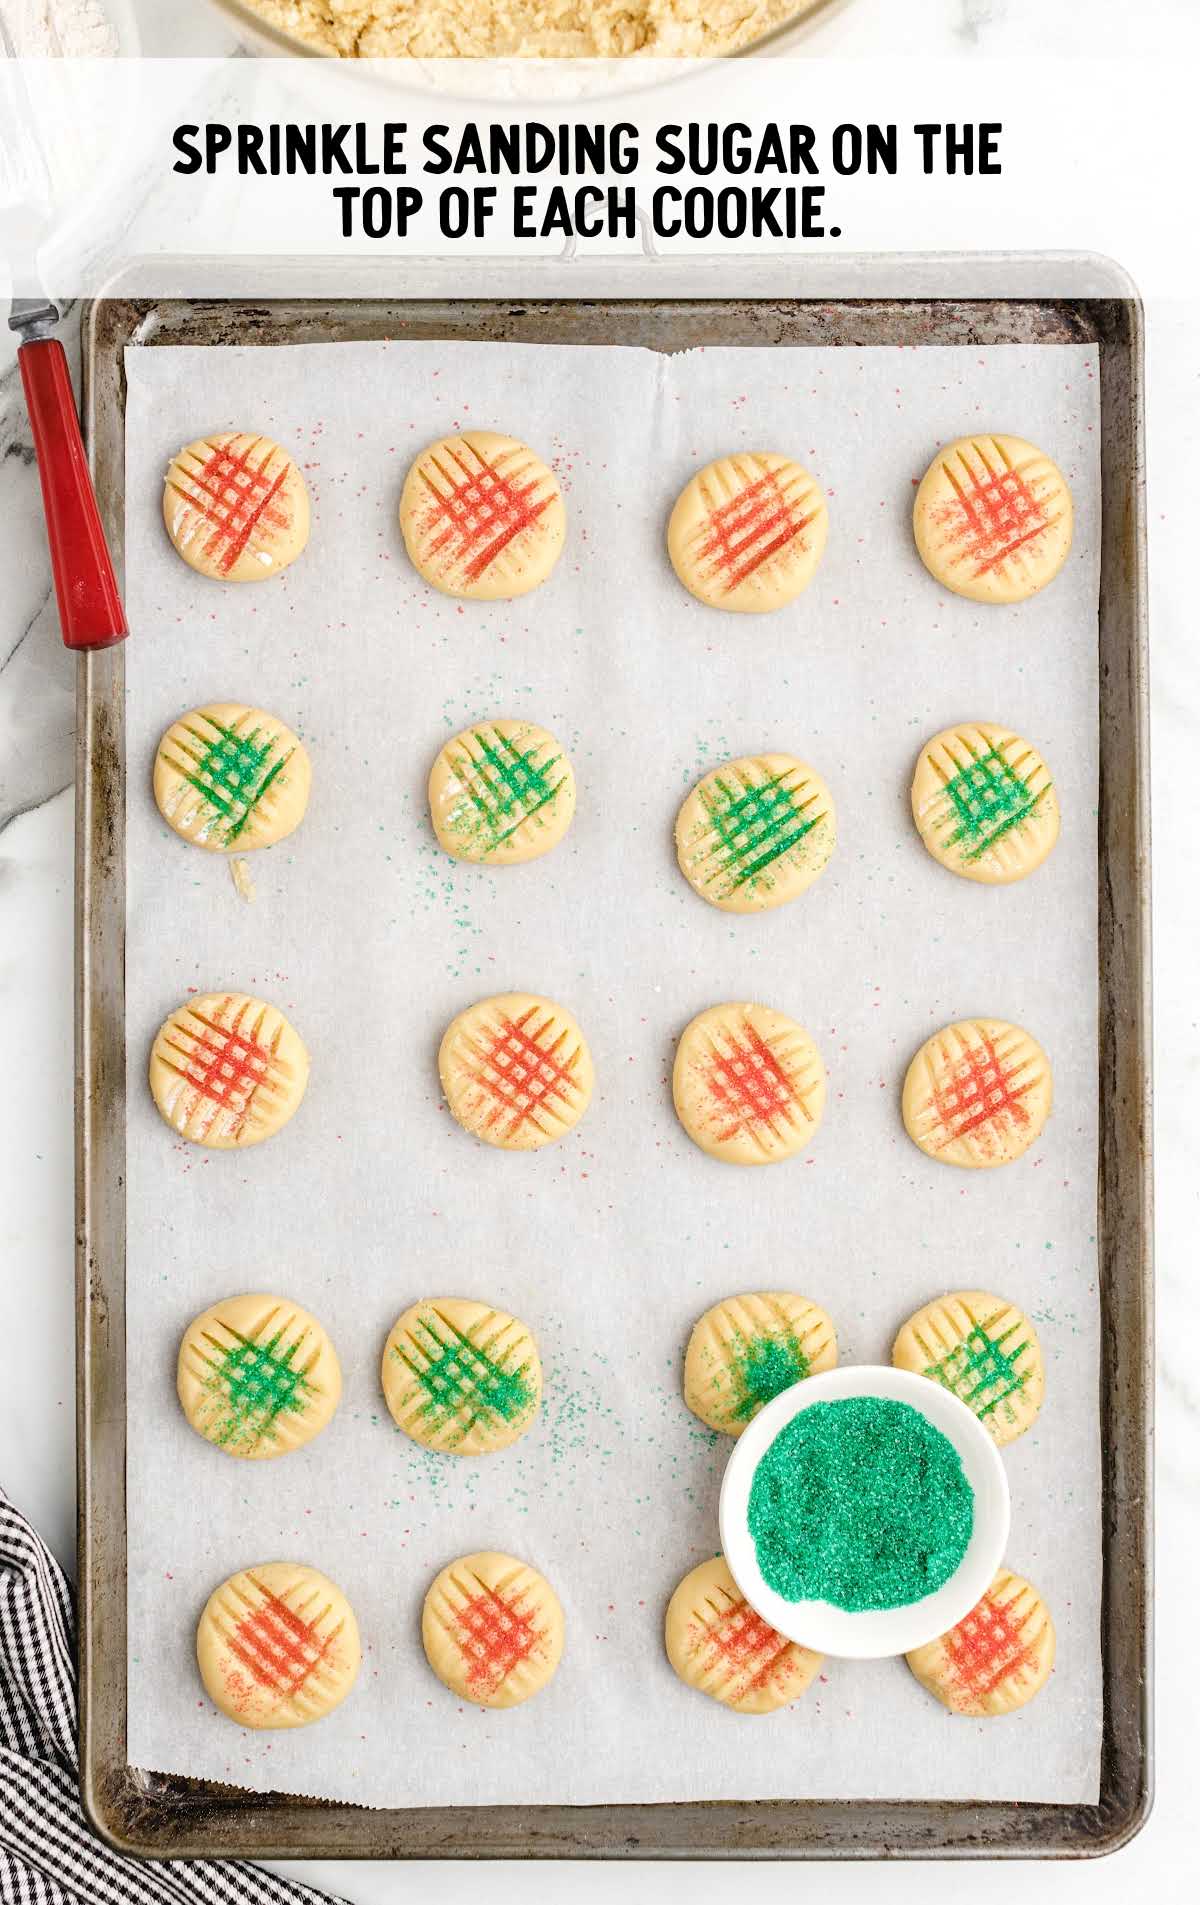 sanding sugar sprinkled on top of each cookie